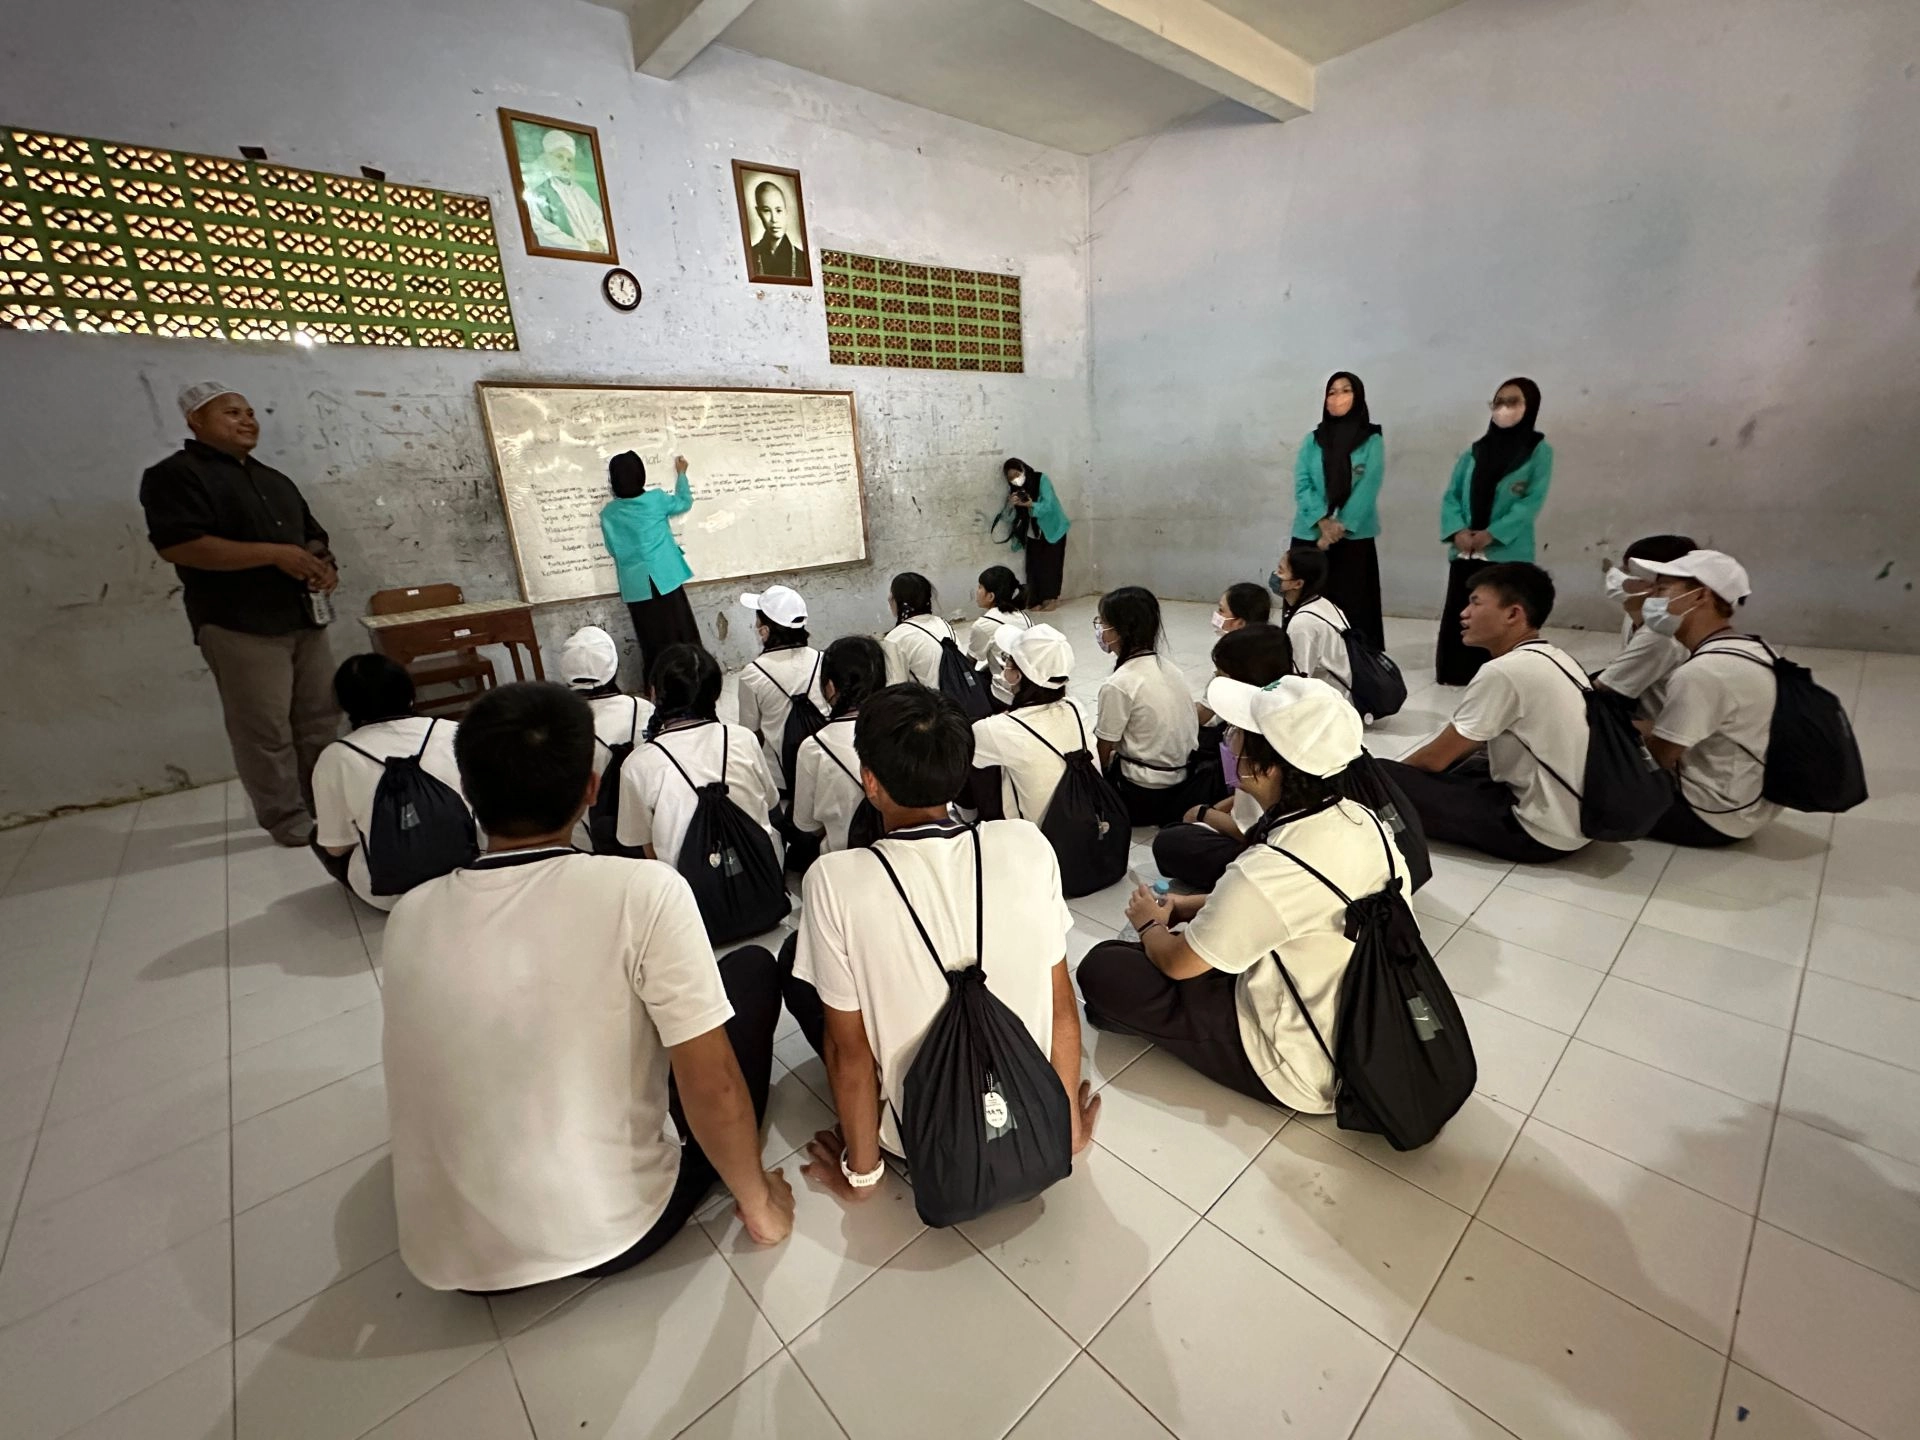 在懸掛證嚴法師法相的習經院教室中，臺南慈中學生模擬習經院的上課情形。